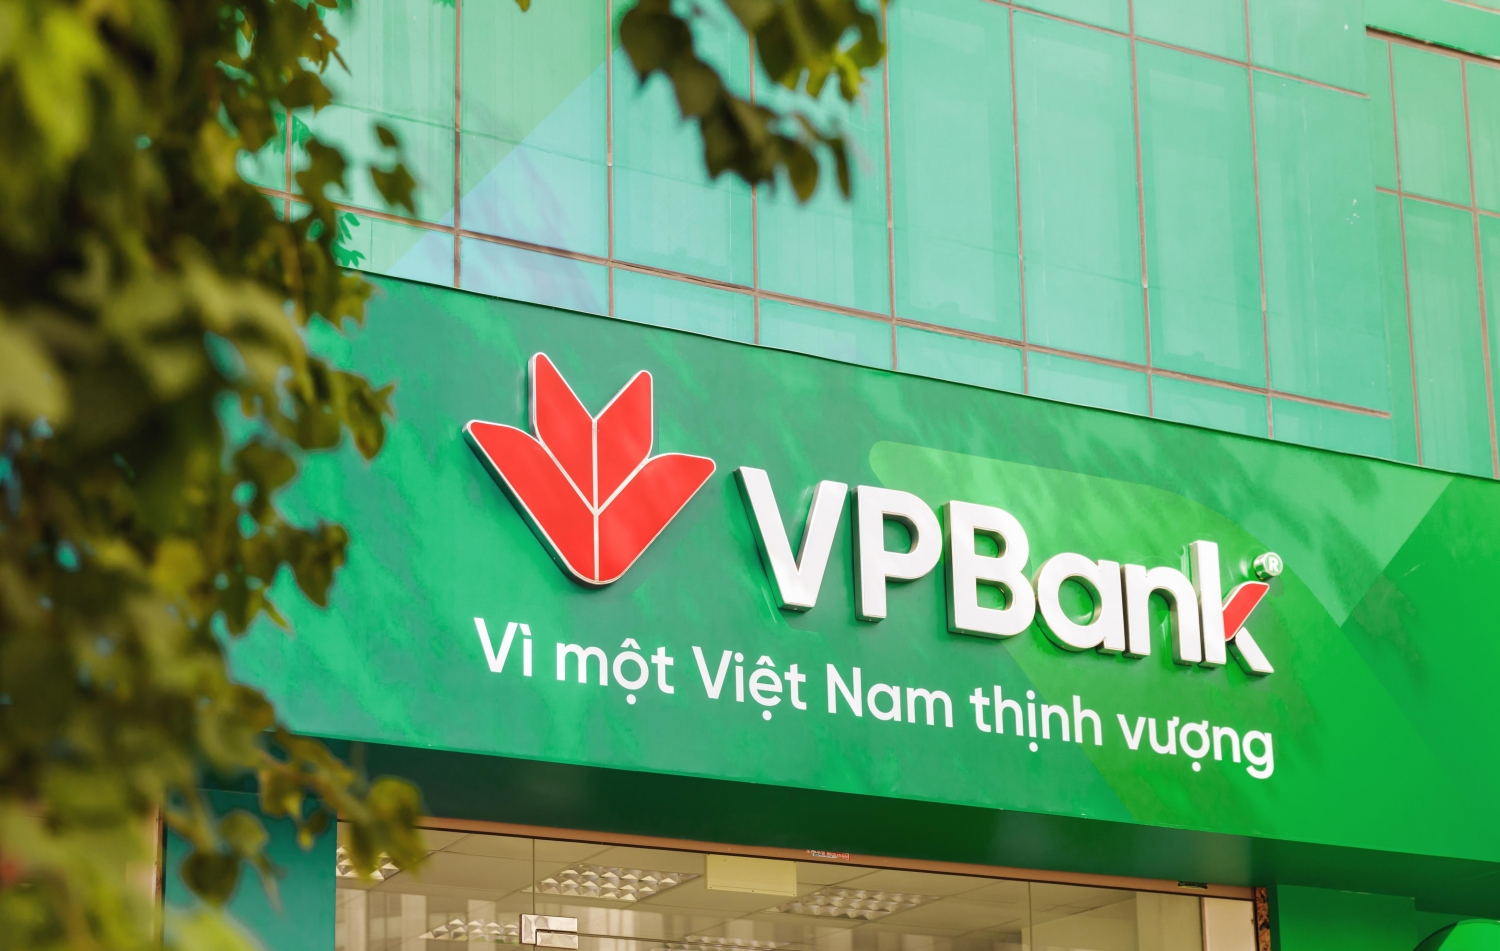 Tin ngân hàng ngày 5/11: VPBank sắp lấy ý kiến cổ đông về việc mua cổ phiếu quỹ